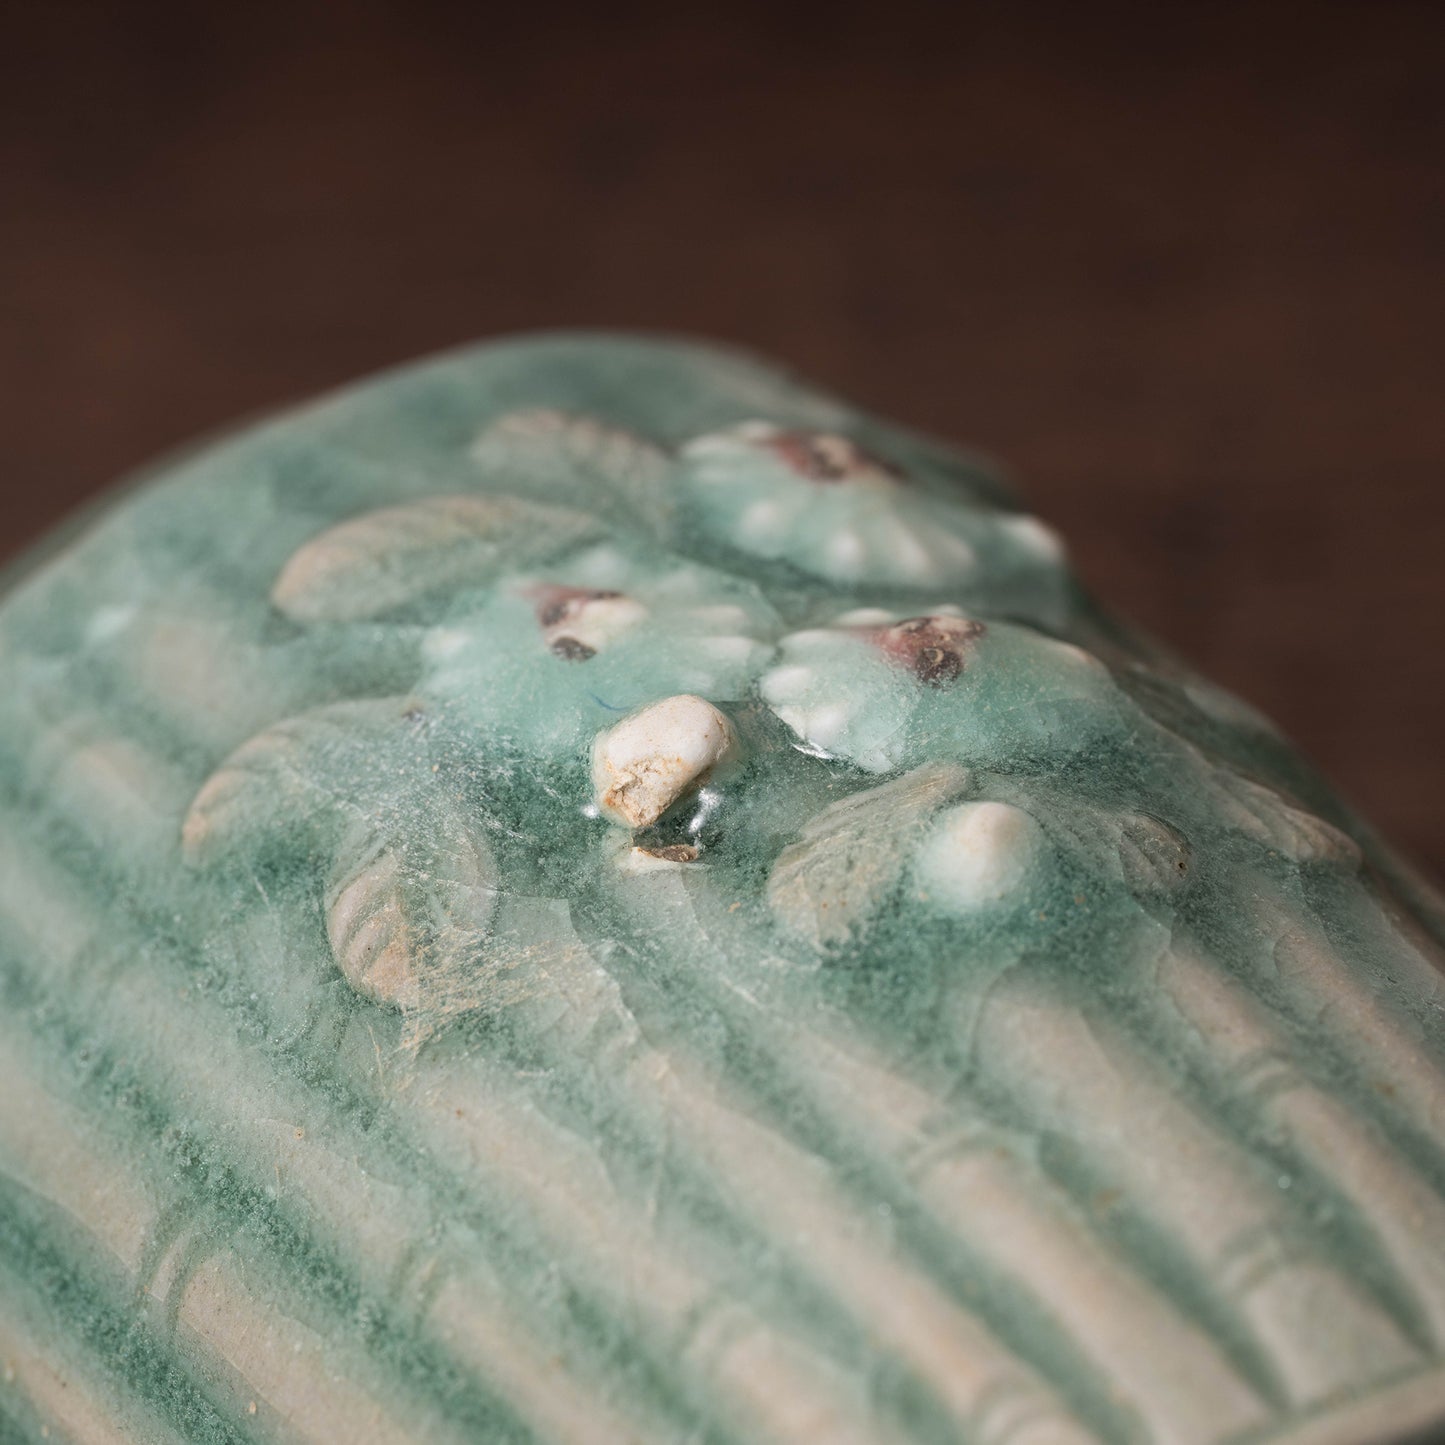 高麗 青磁陽刻竹文菊花飾筒形碗